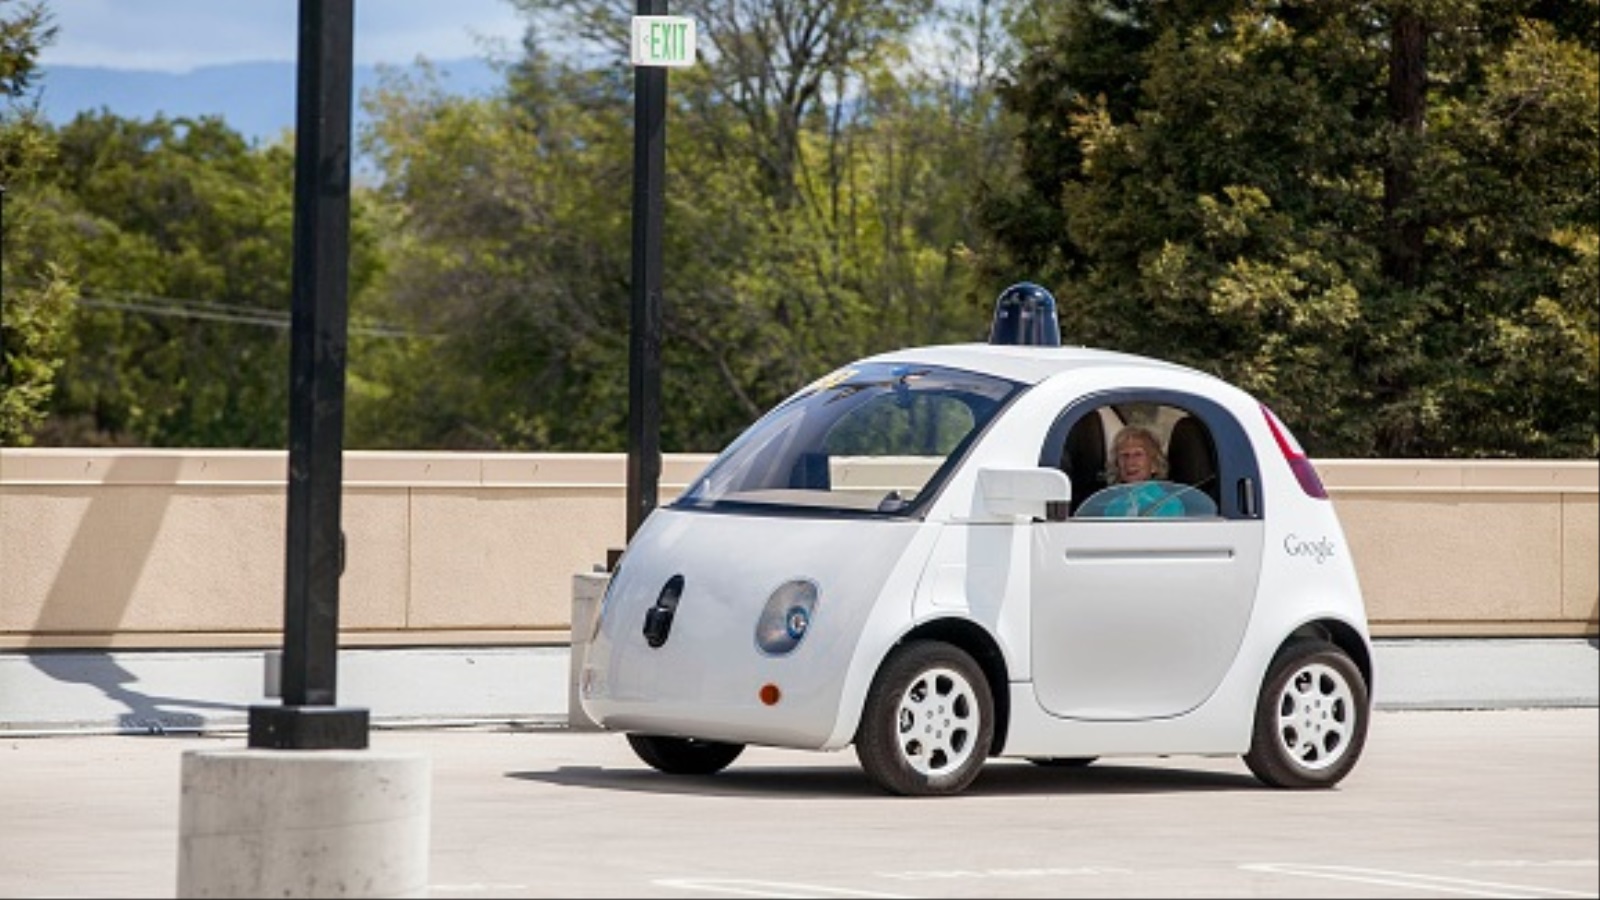 منذ أن بدأ المشروع في غوغل عام 2009، استطاعت السيارات قطع ما يزيد عن مليوني ميل من القيادة الذاتية على الطرق المختلفة